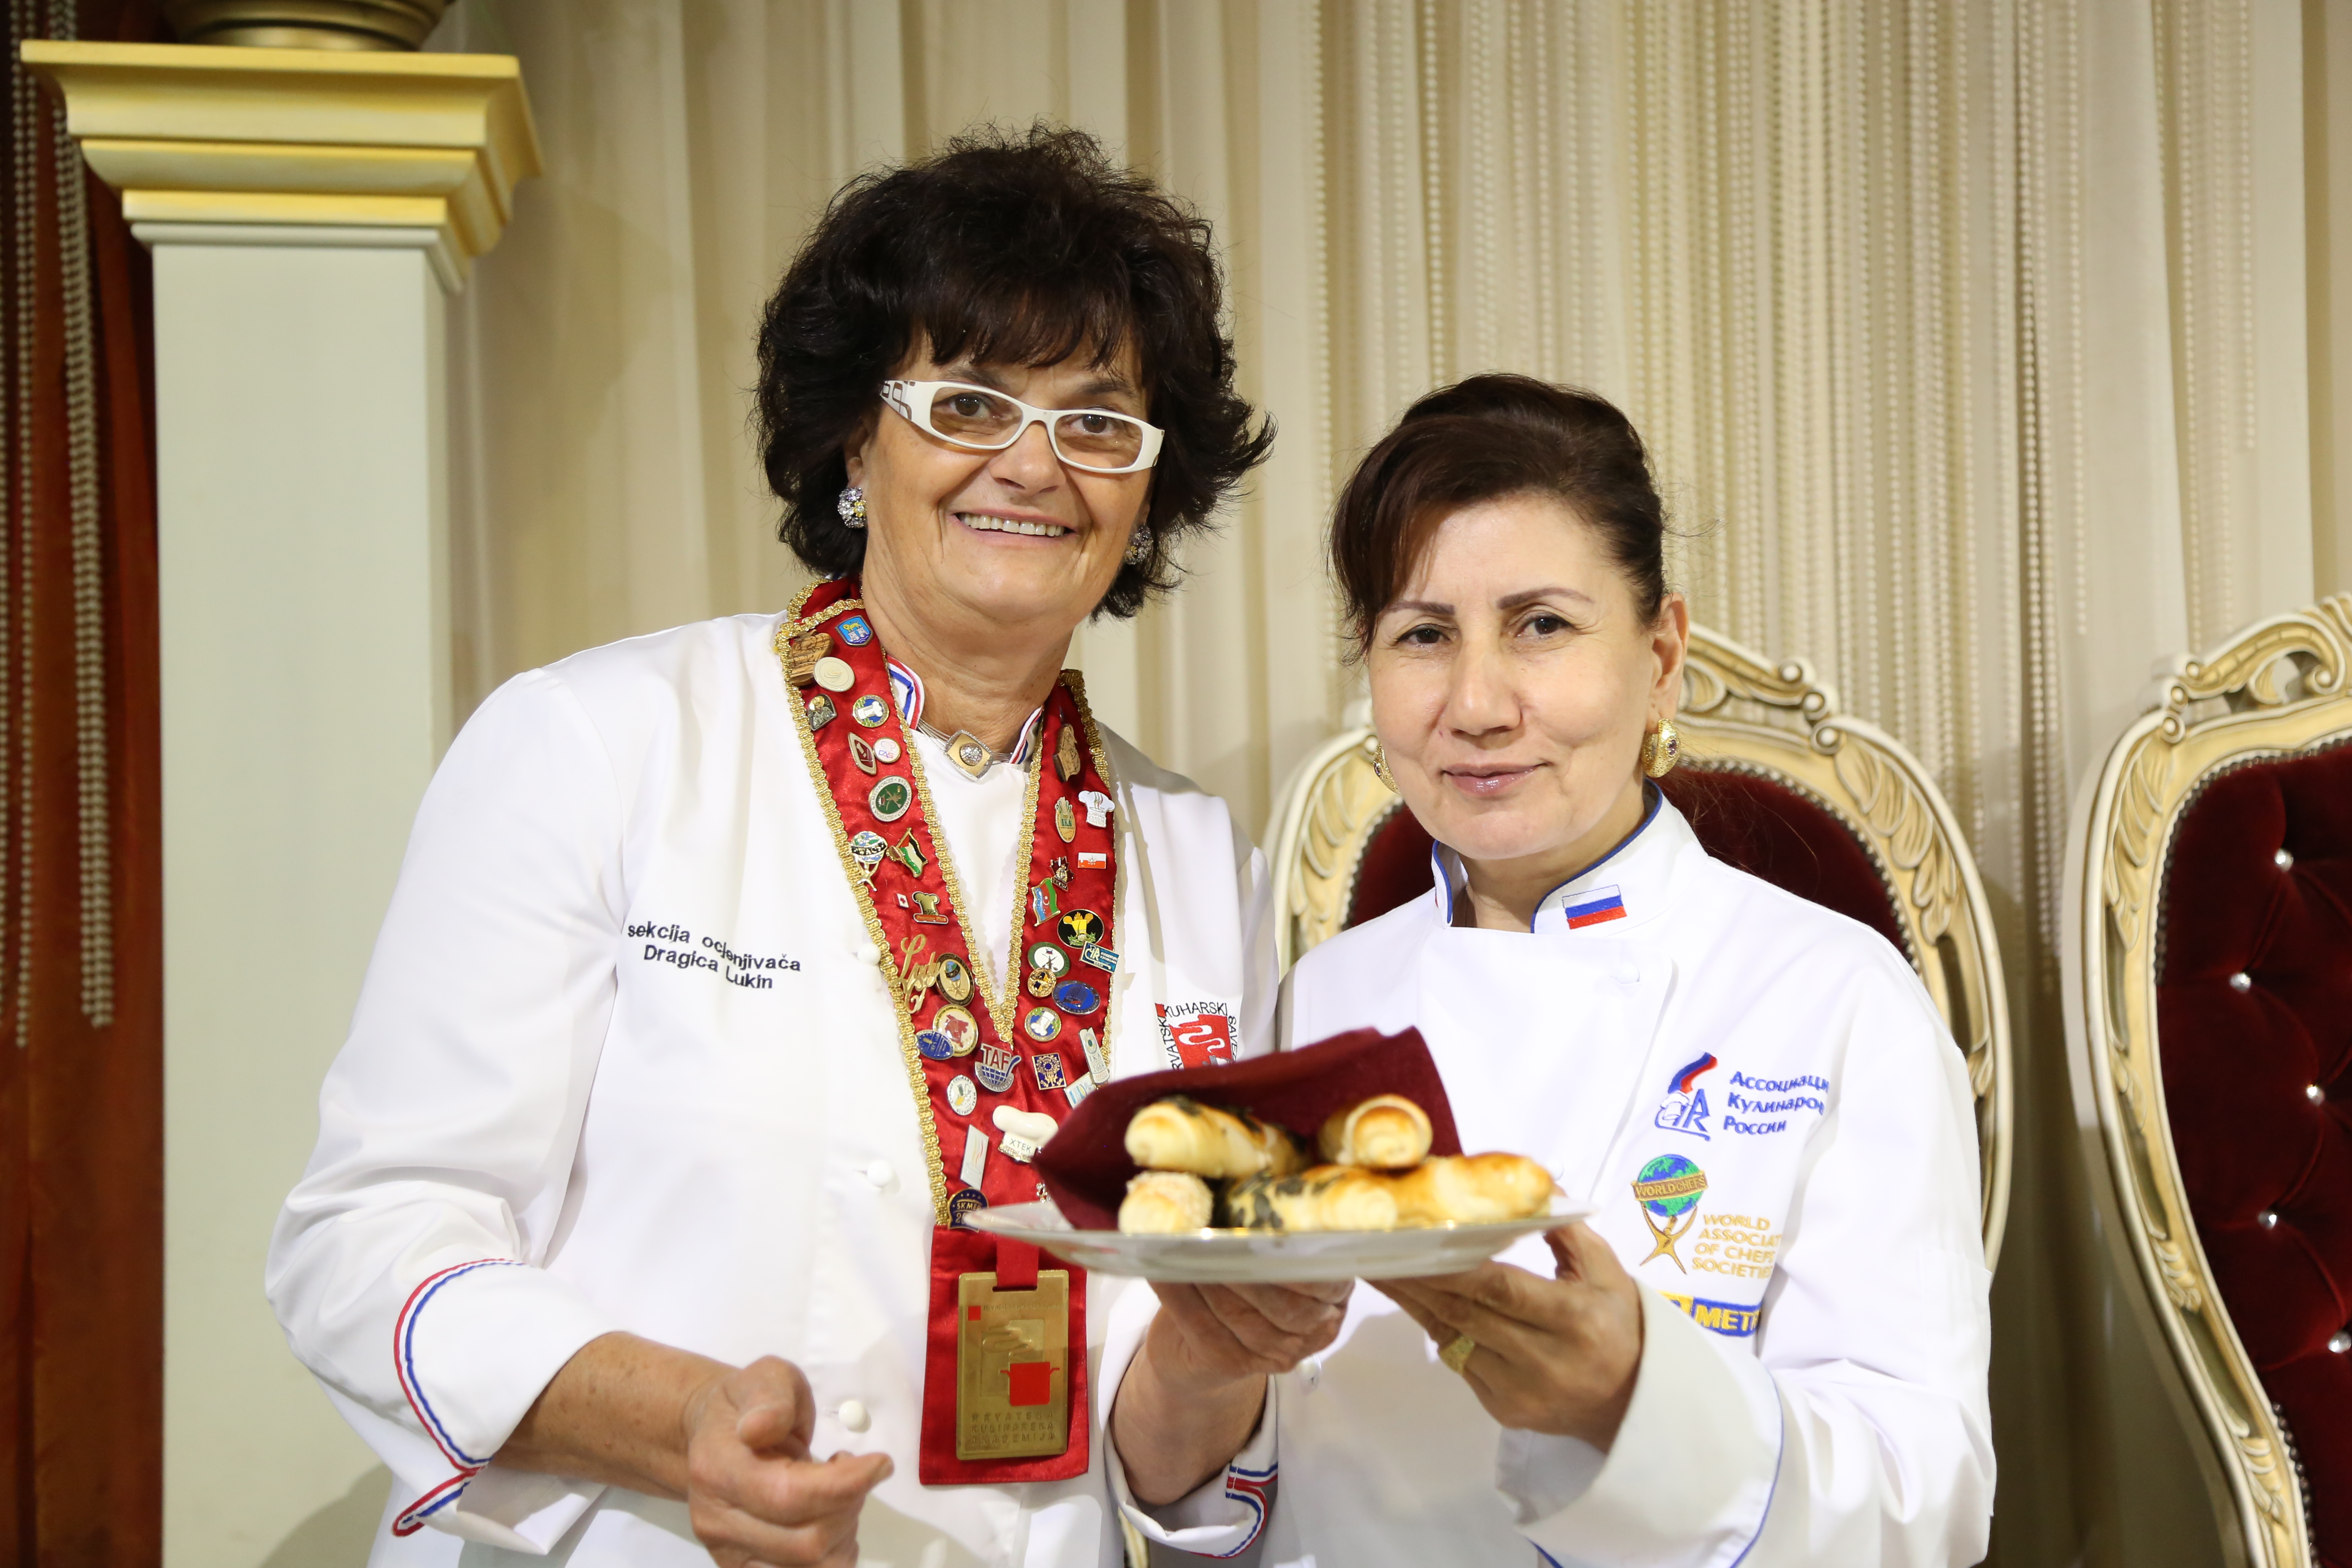  Центр обучения кулинарному искусству «VIP Кулинария» — известное далеко за пределами Дагестана и России специализированное учебное заведение высокого класса по подготовке и переподготовке поварских и кондитерских кадров.